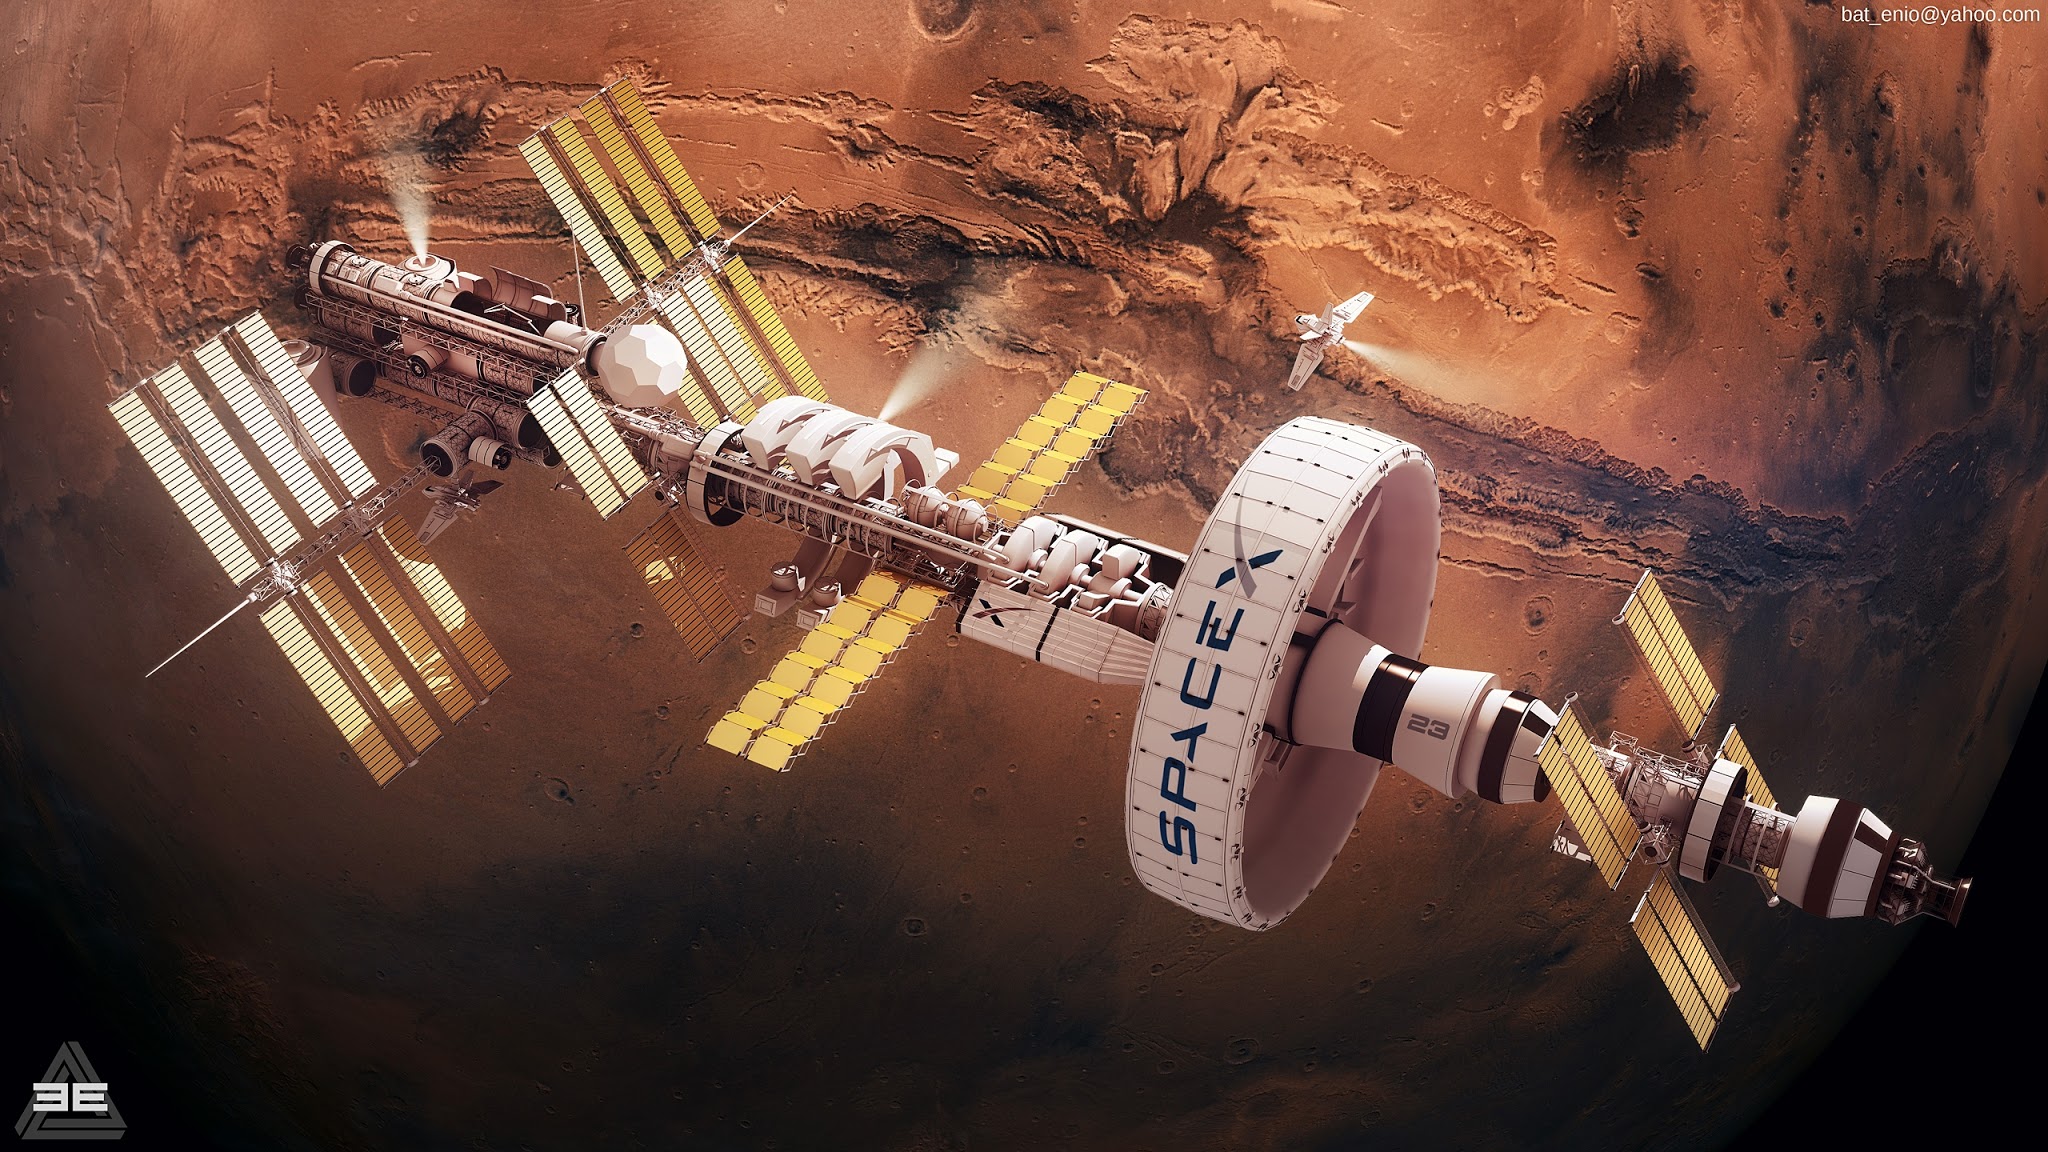 SpaceX Mars orbital station by Encho Enchev | human Mars